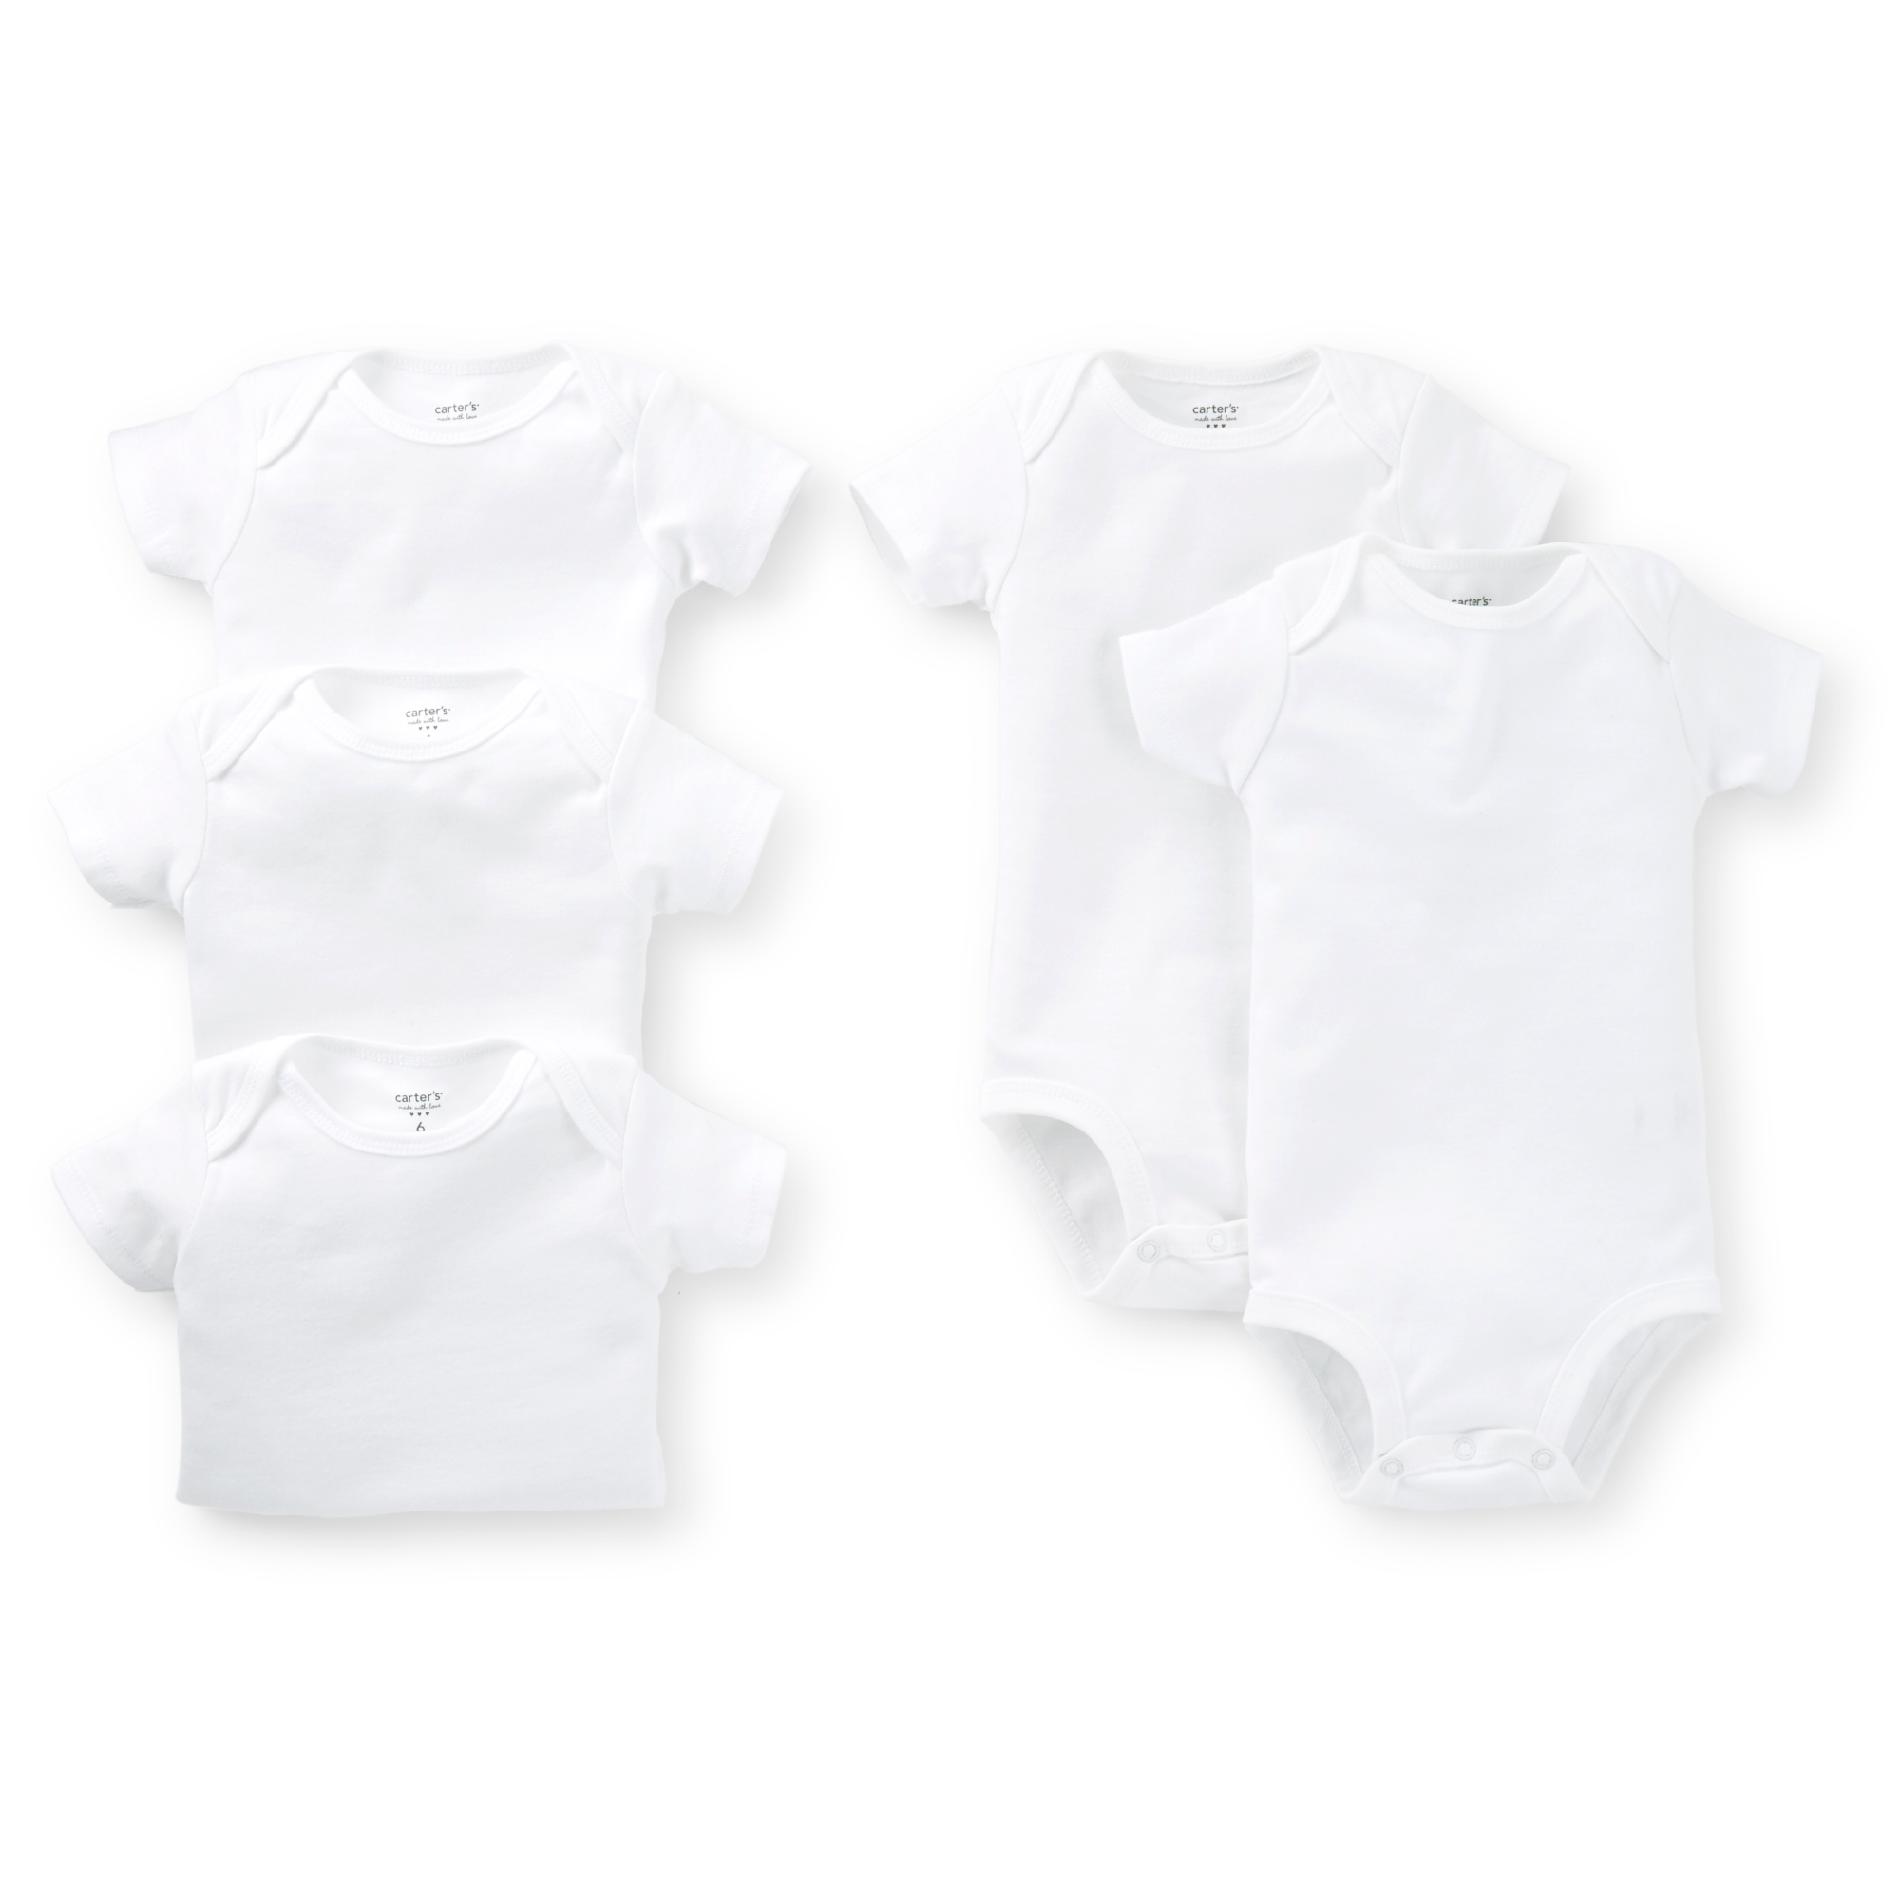 Carter's Newborn & Infant 5-pack White Bodysuits